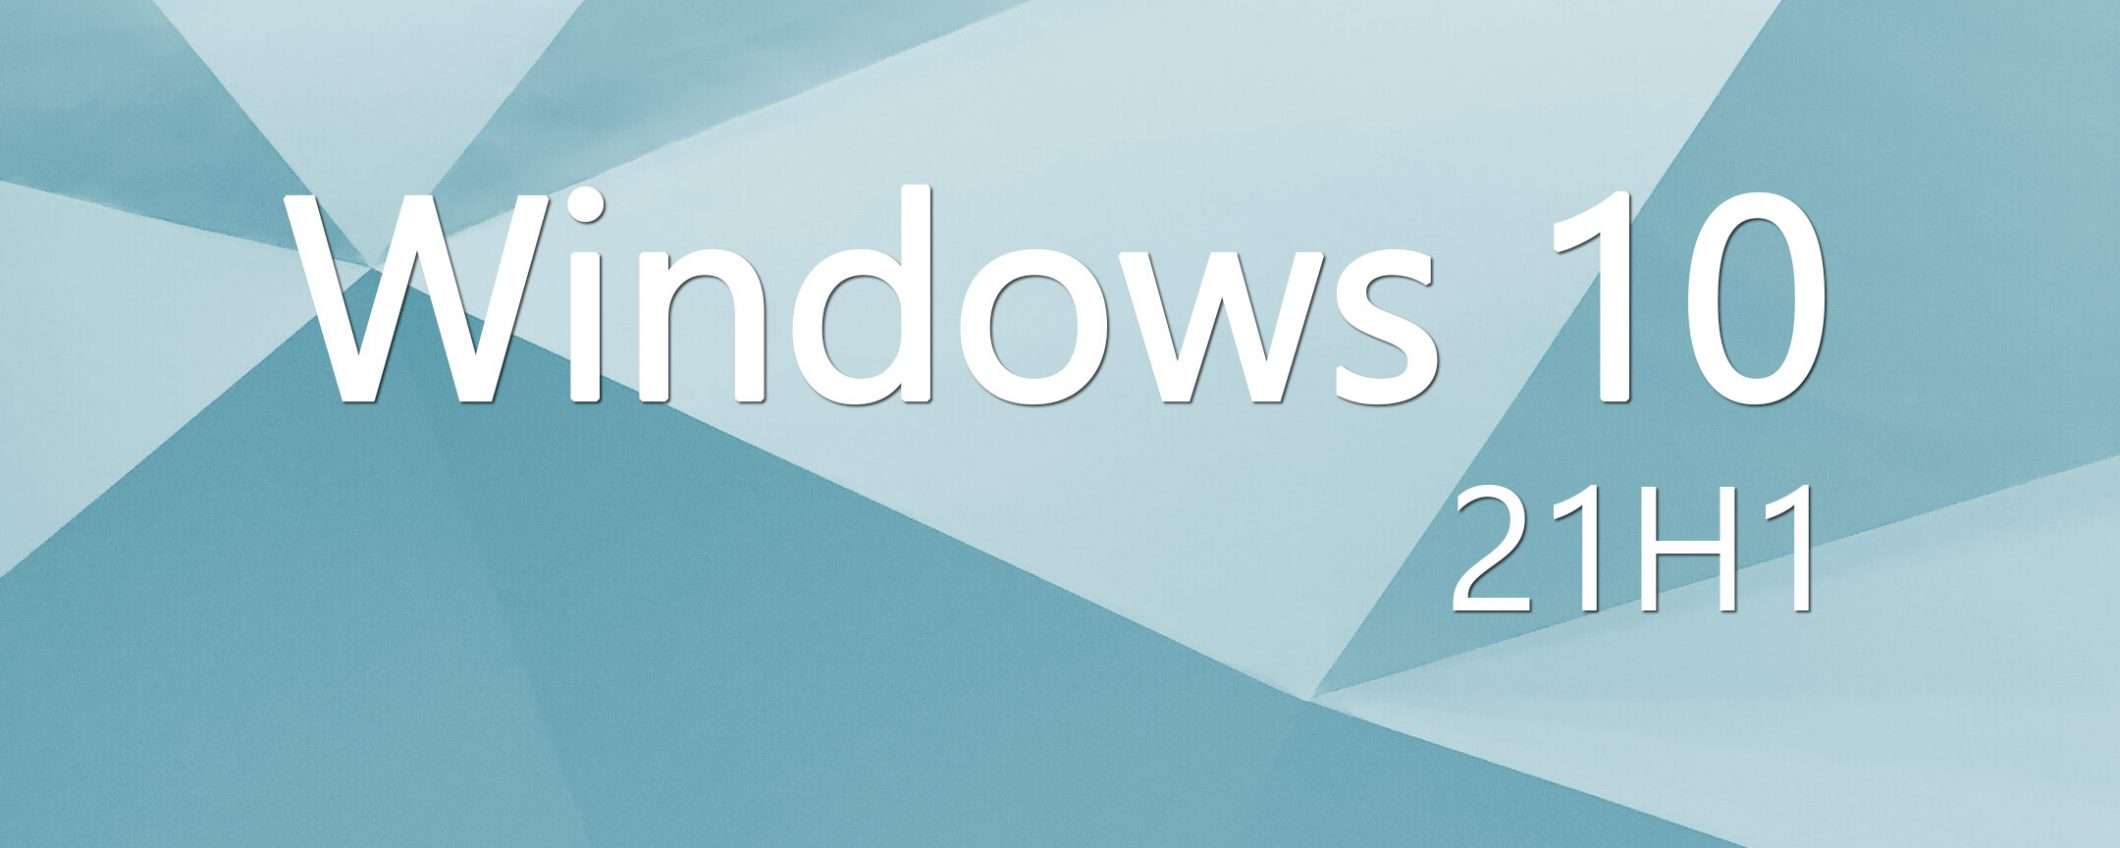 Windows 10 21H1: aggiornamento già sui PC